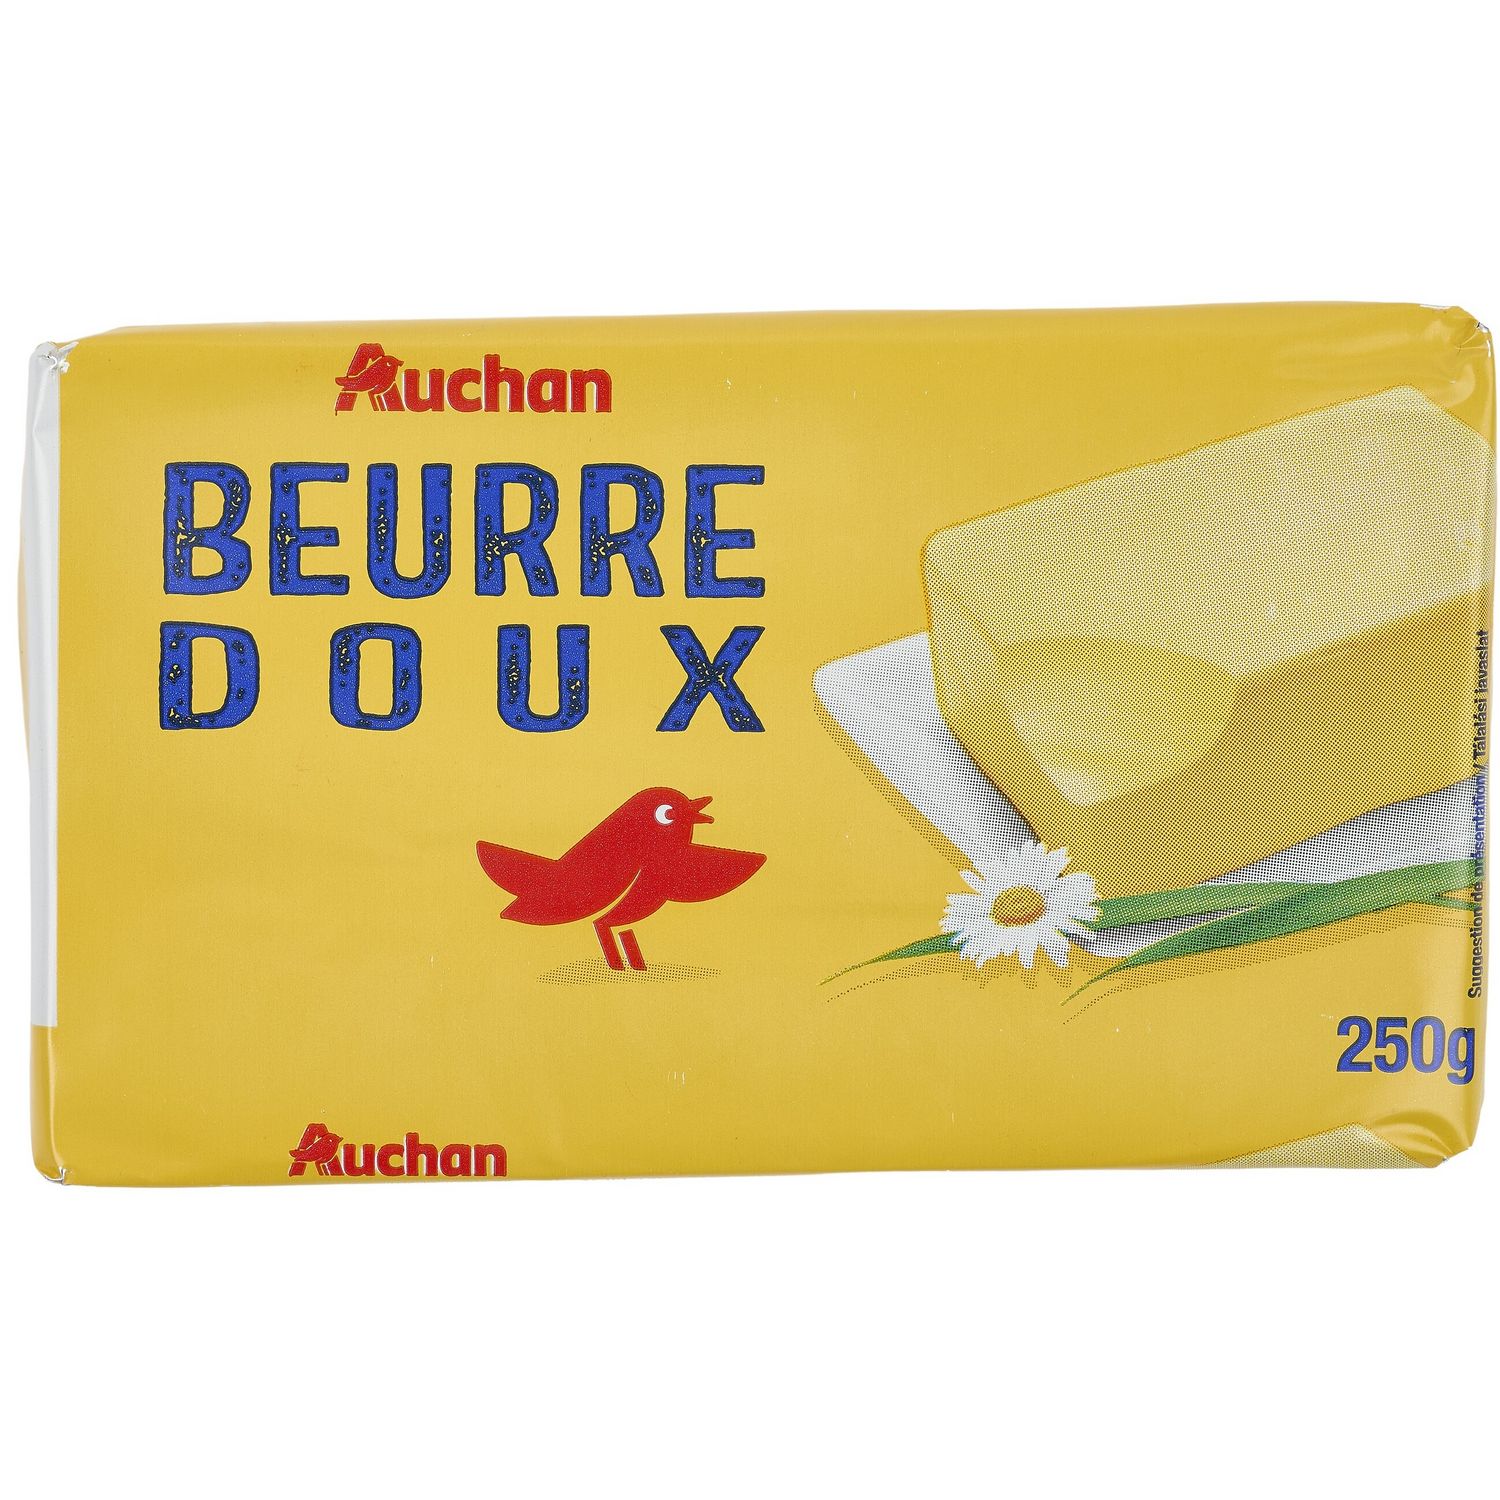 Le beurre doux 250g